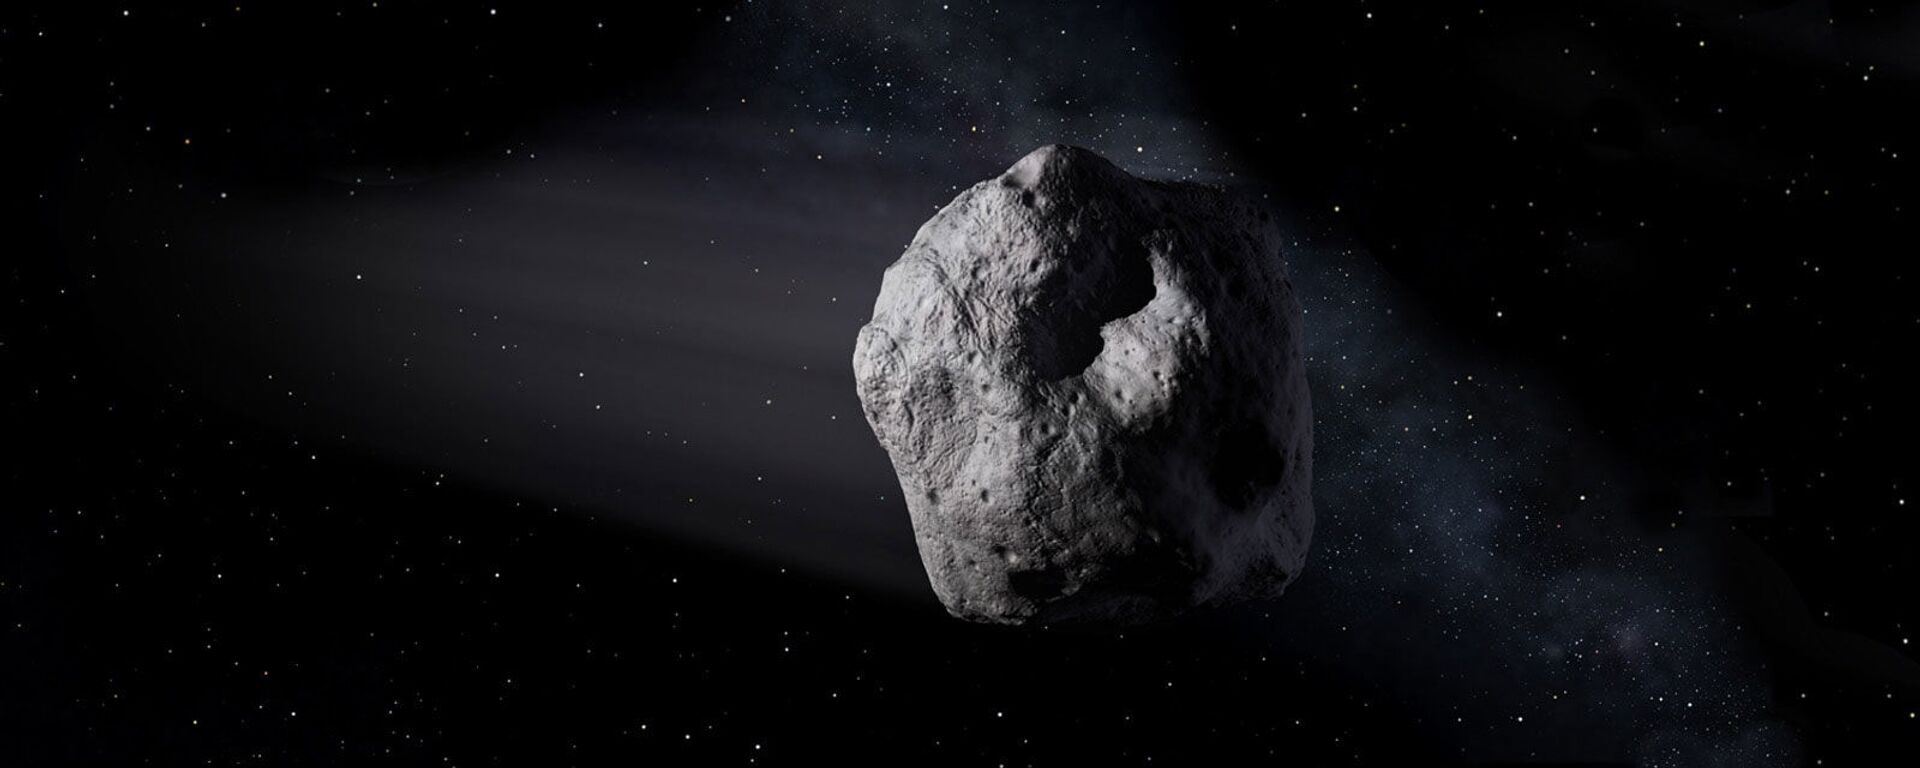 Художественное изображение околоземного астероида - Sputnik Việt Nam, 1920, 15.02.2022